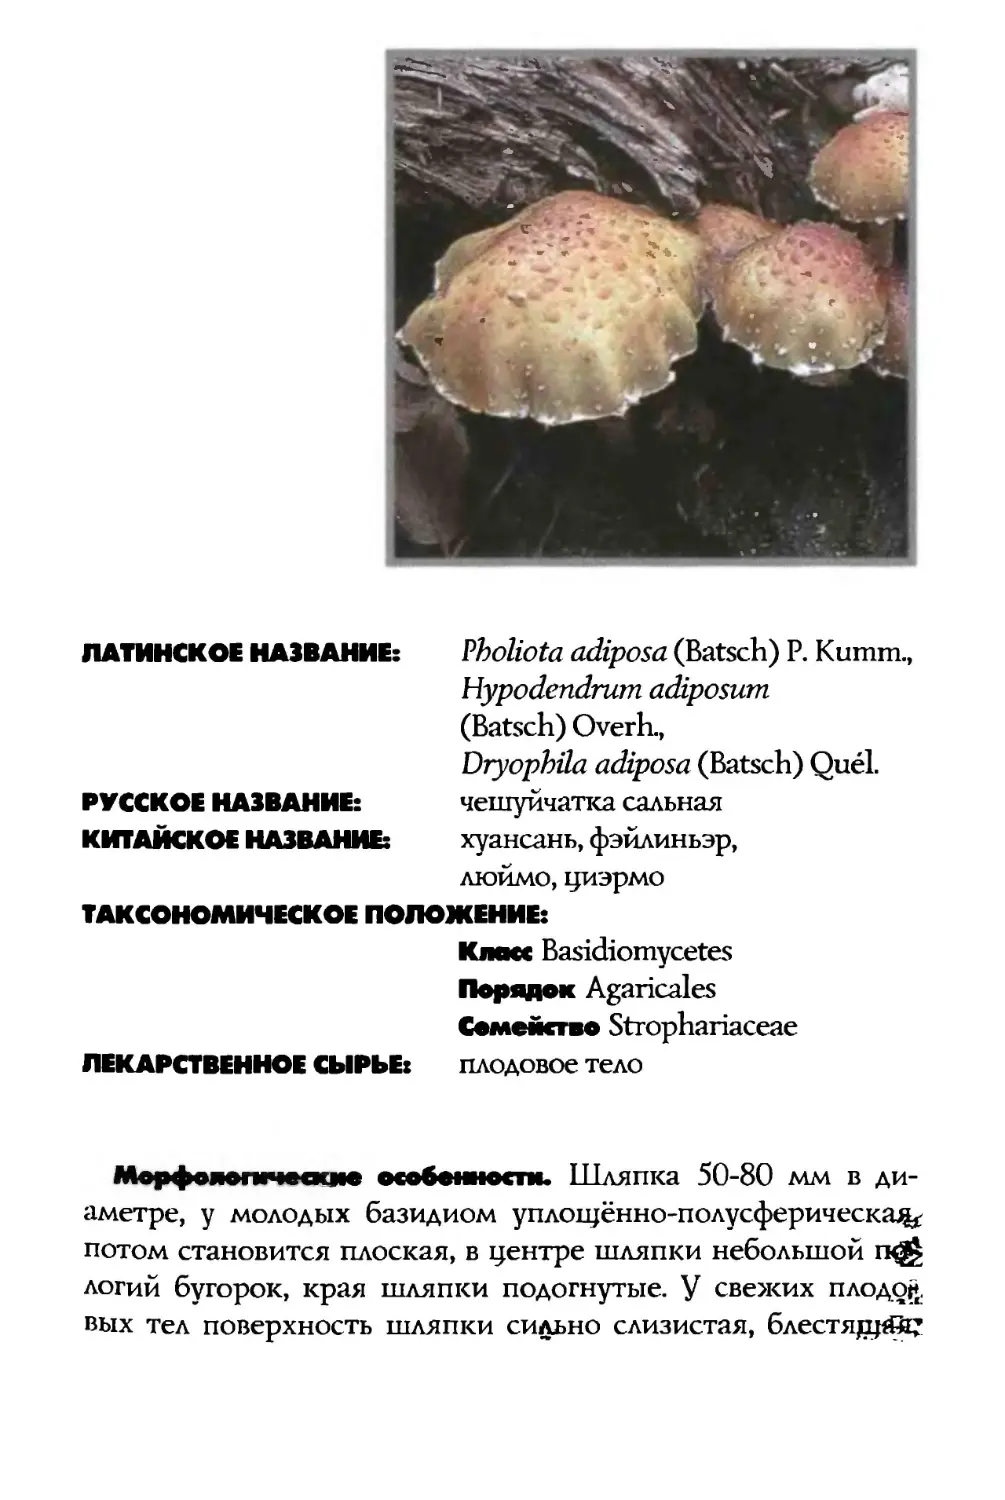 Pholiota adiposa